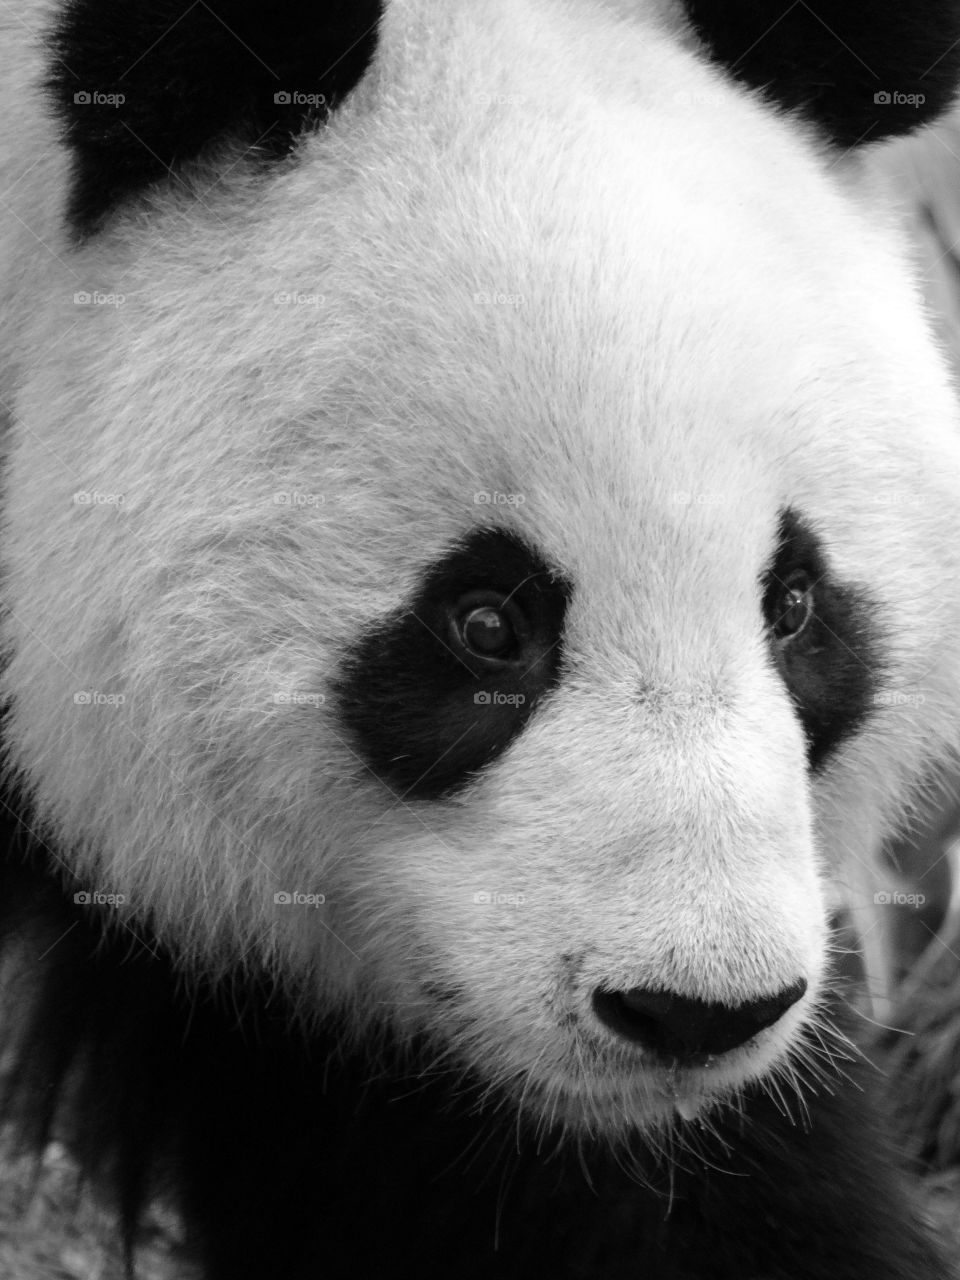 Close-up of a panda